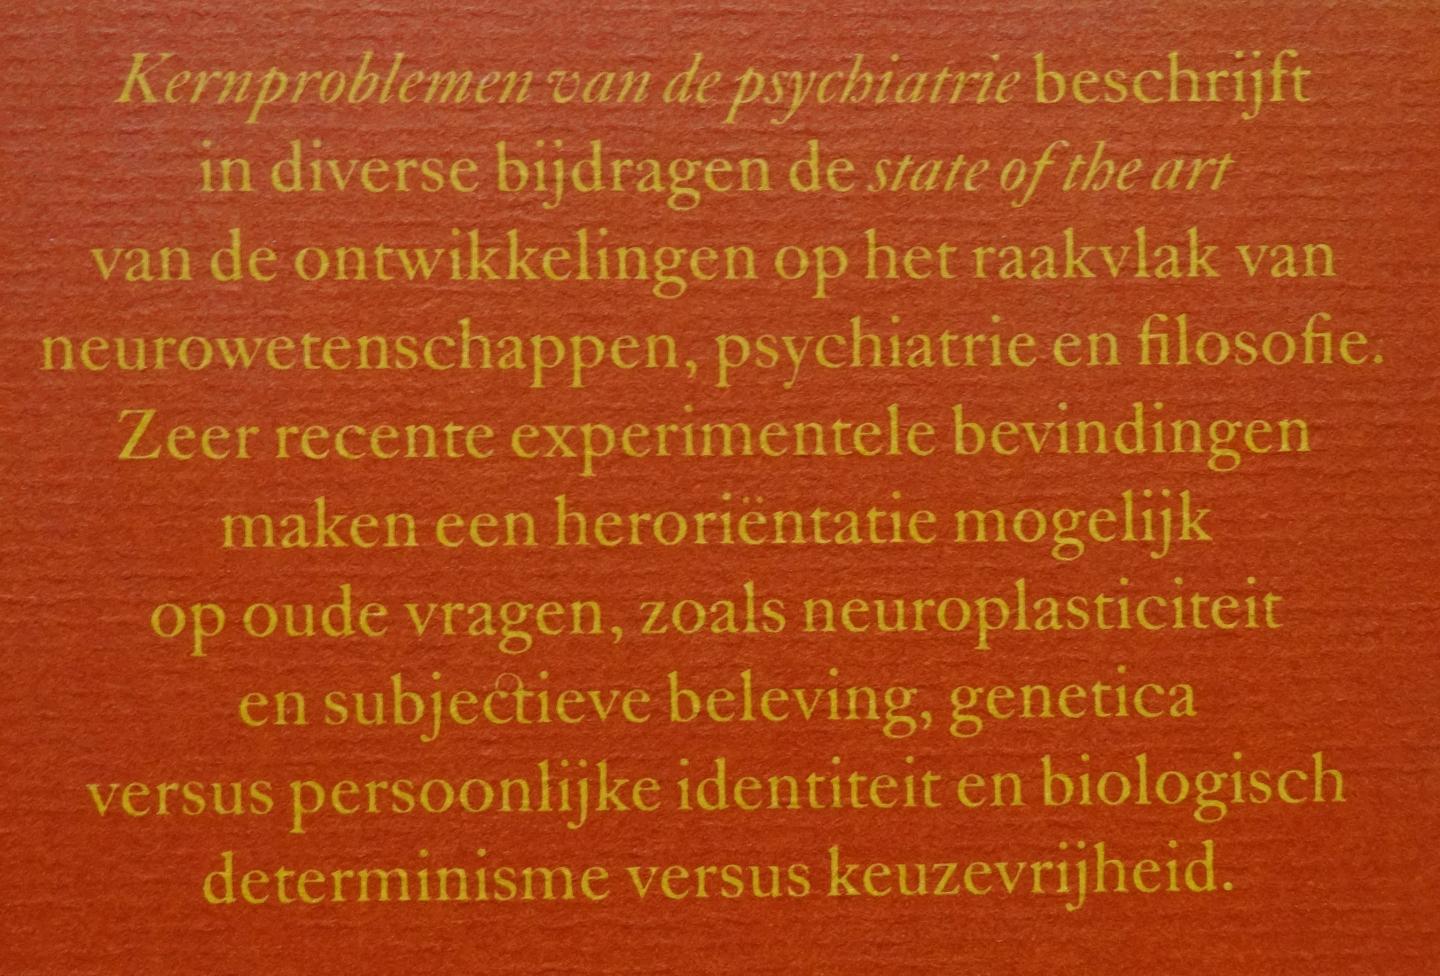 Boer, Johan A. den / Gerrit Glas / Antoine Mooij (redactie) - Kernproblemen van de psychiatrie [ isbn 9789085065289 ]